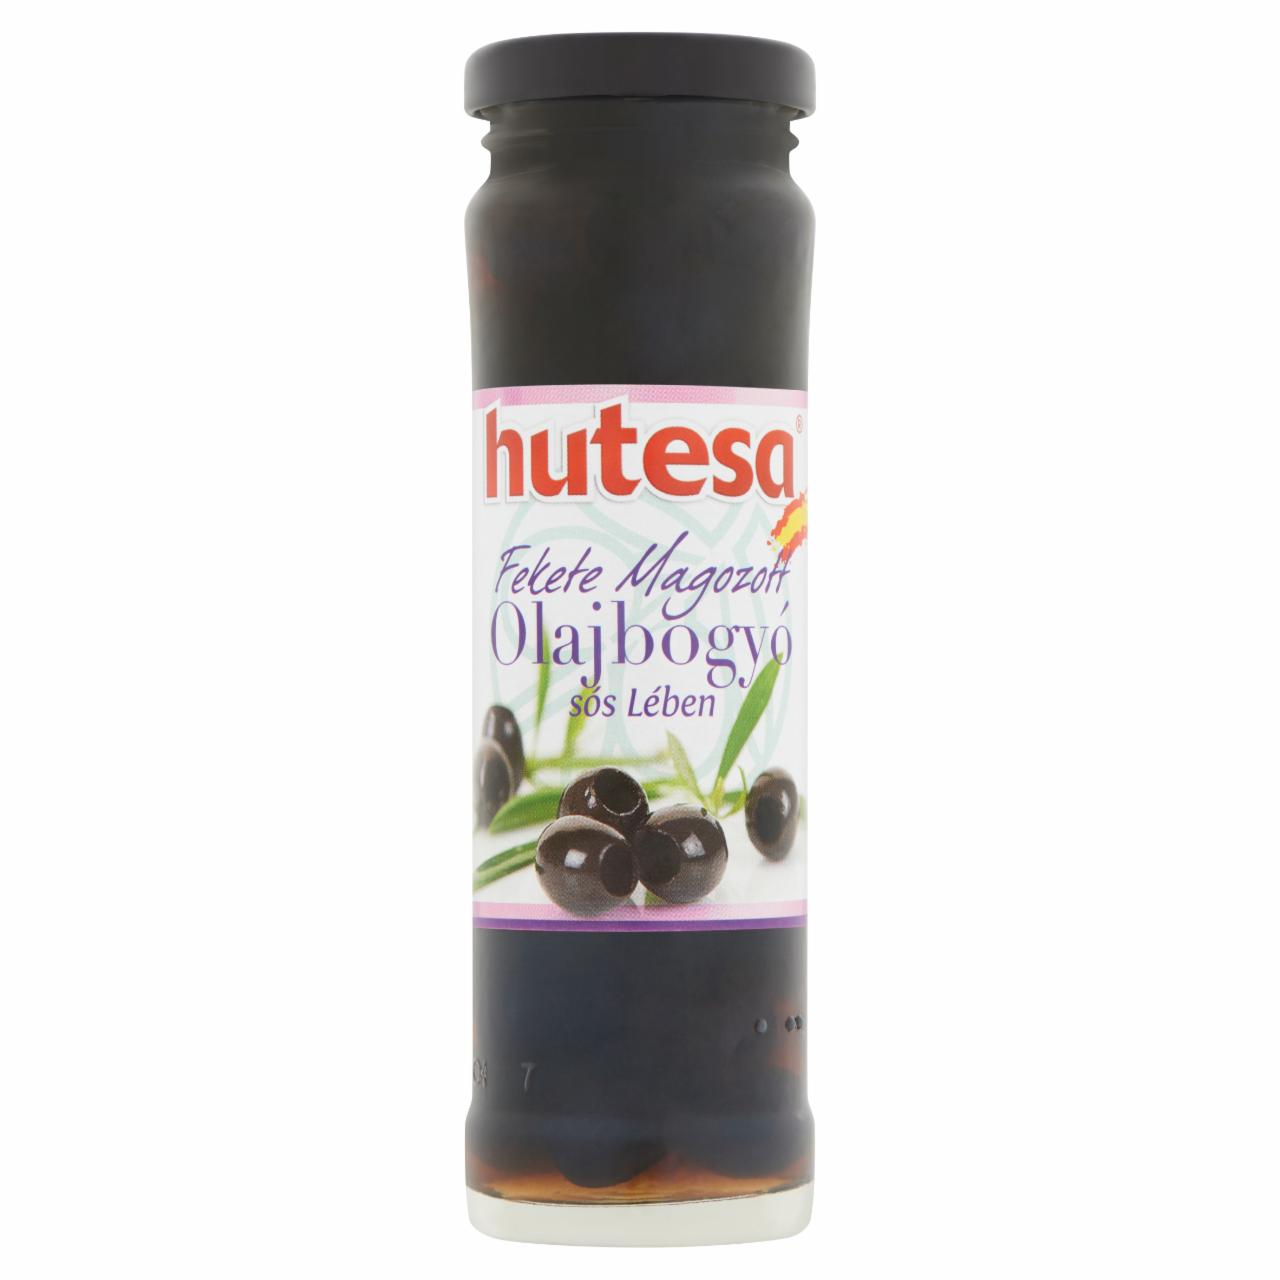 Képek - Hutesa fekete magozott olajbogyó sós lében 140 g